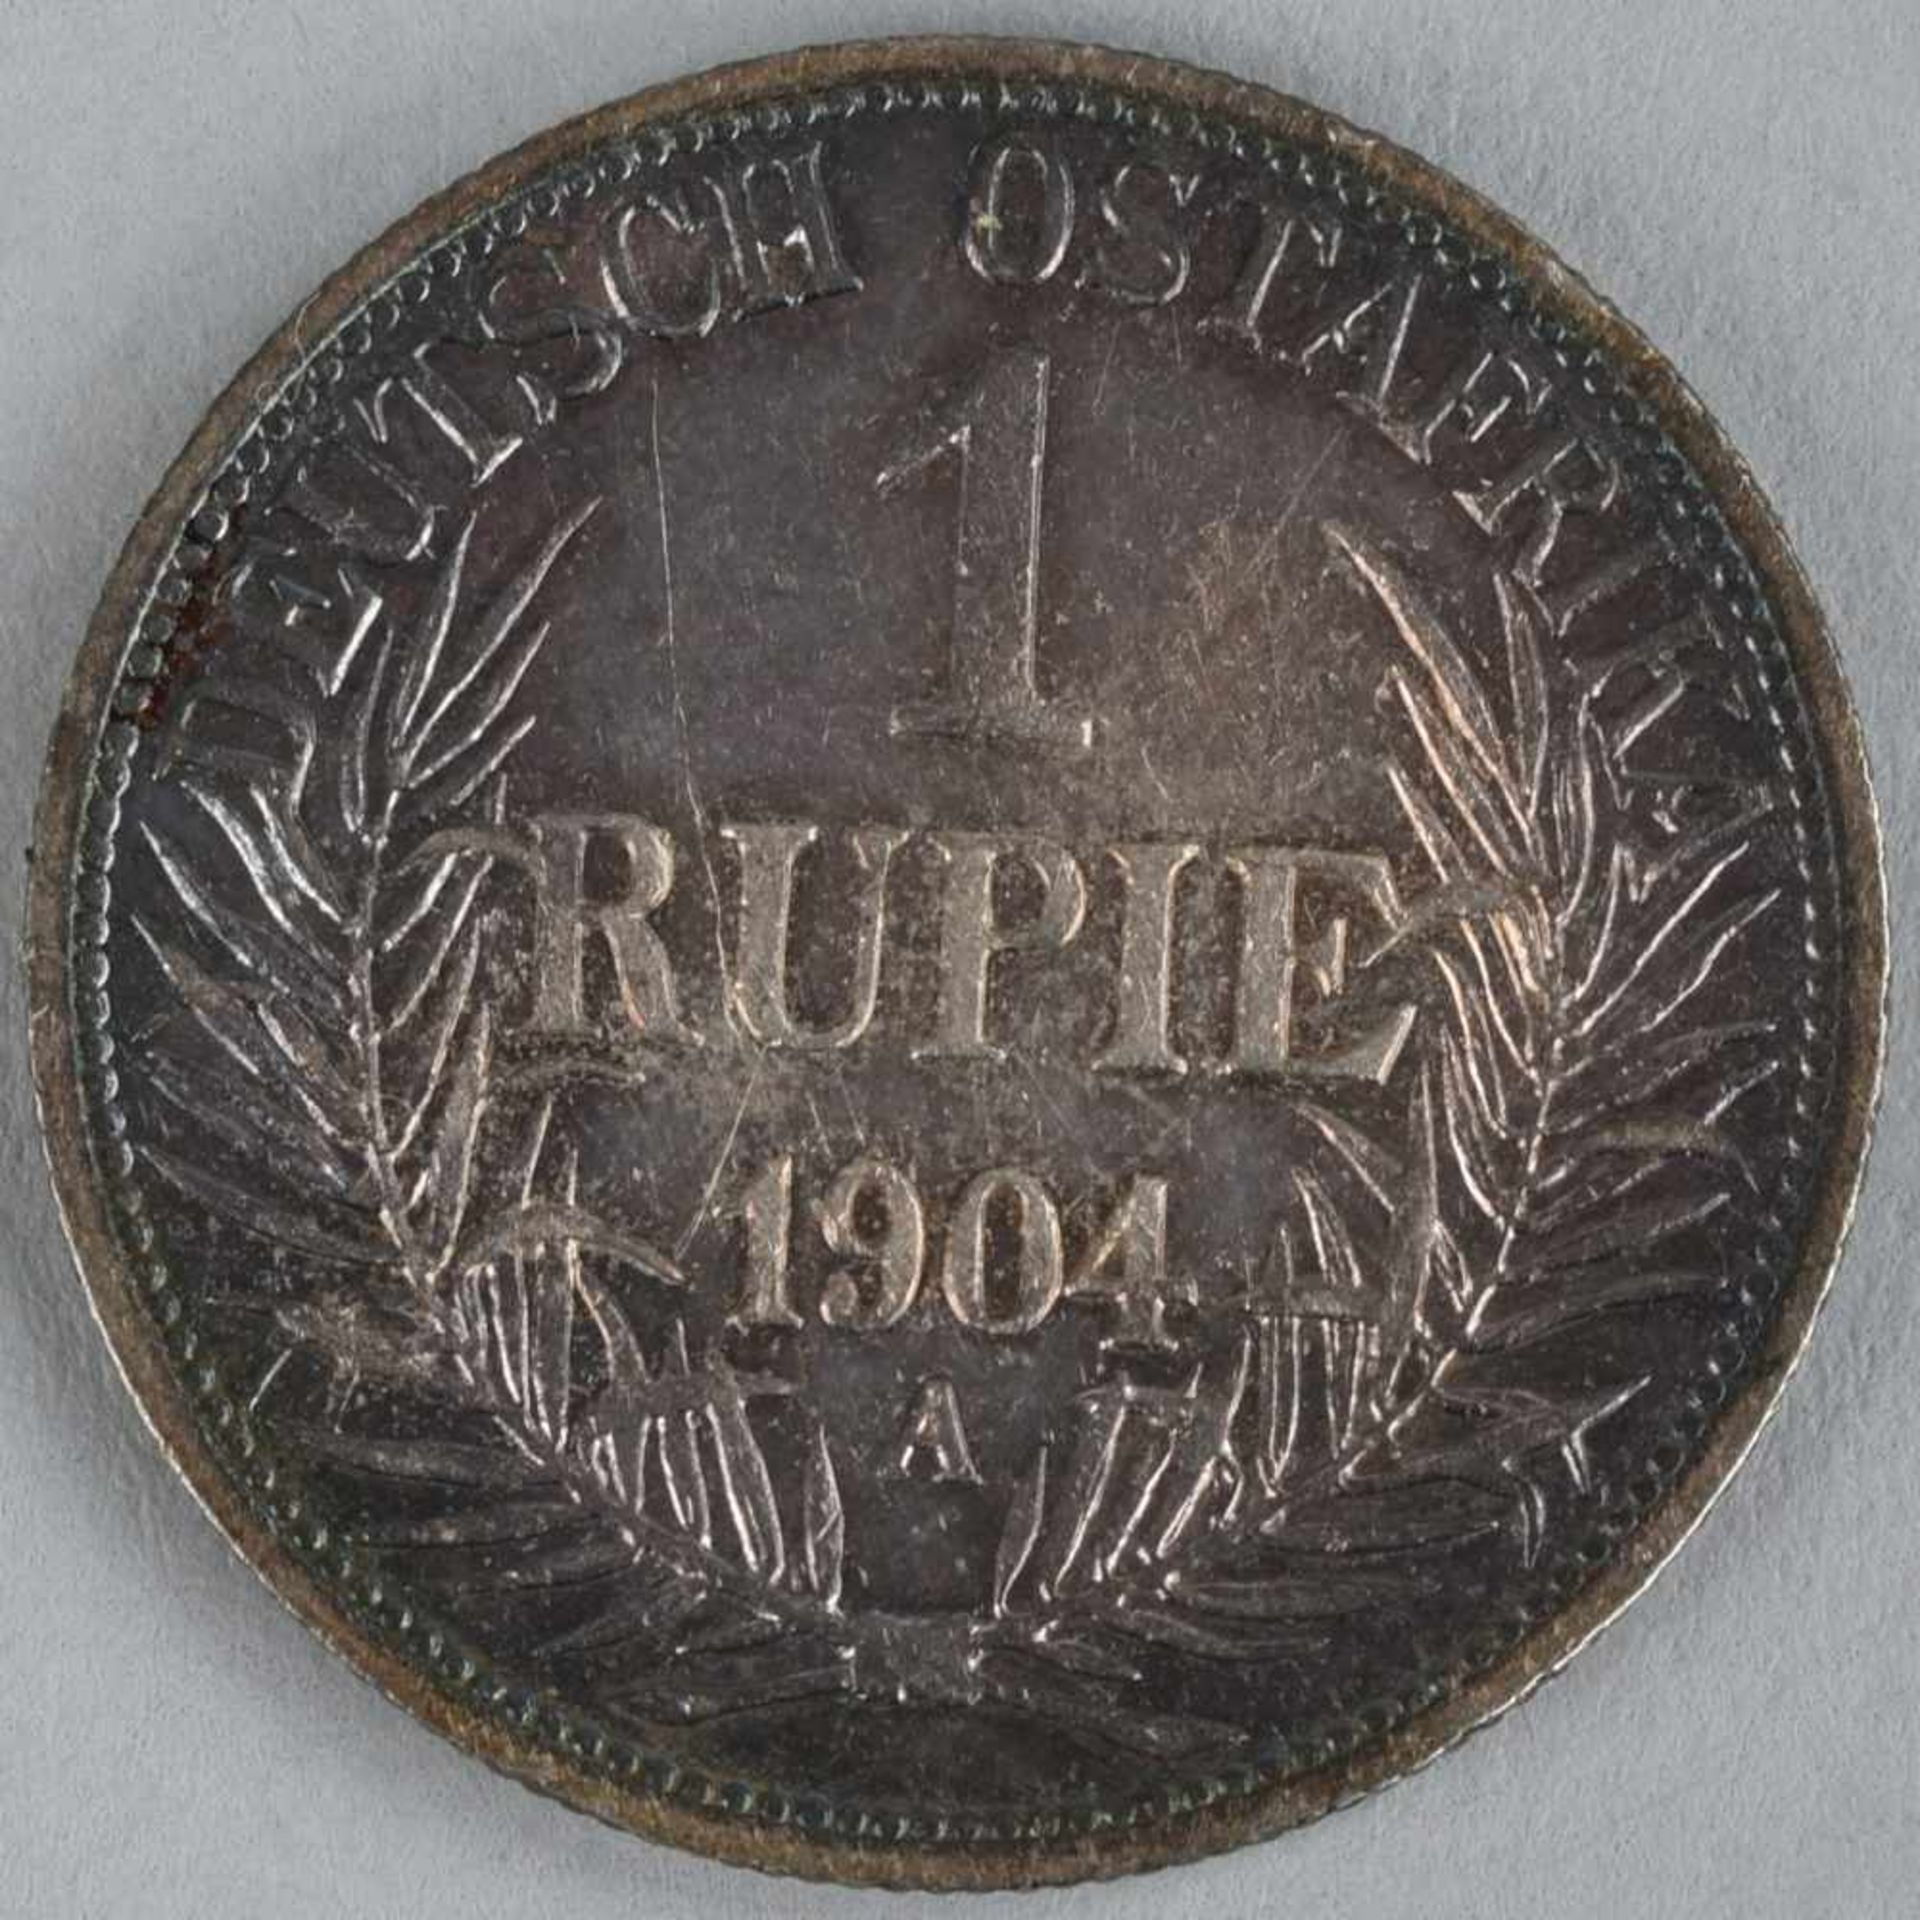 Silbermünze Deutsche Kolonien 1904 1 Rupie in Silber, Deutsch-Ostafrika, av. Wertangabe mit